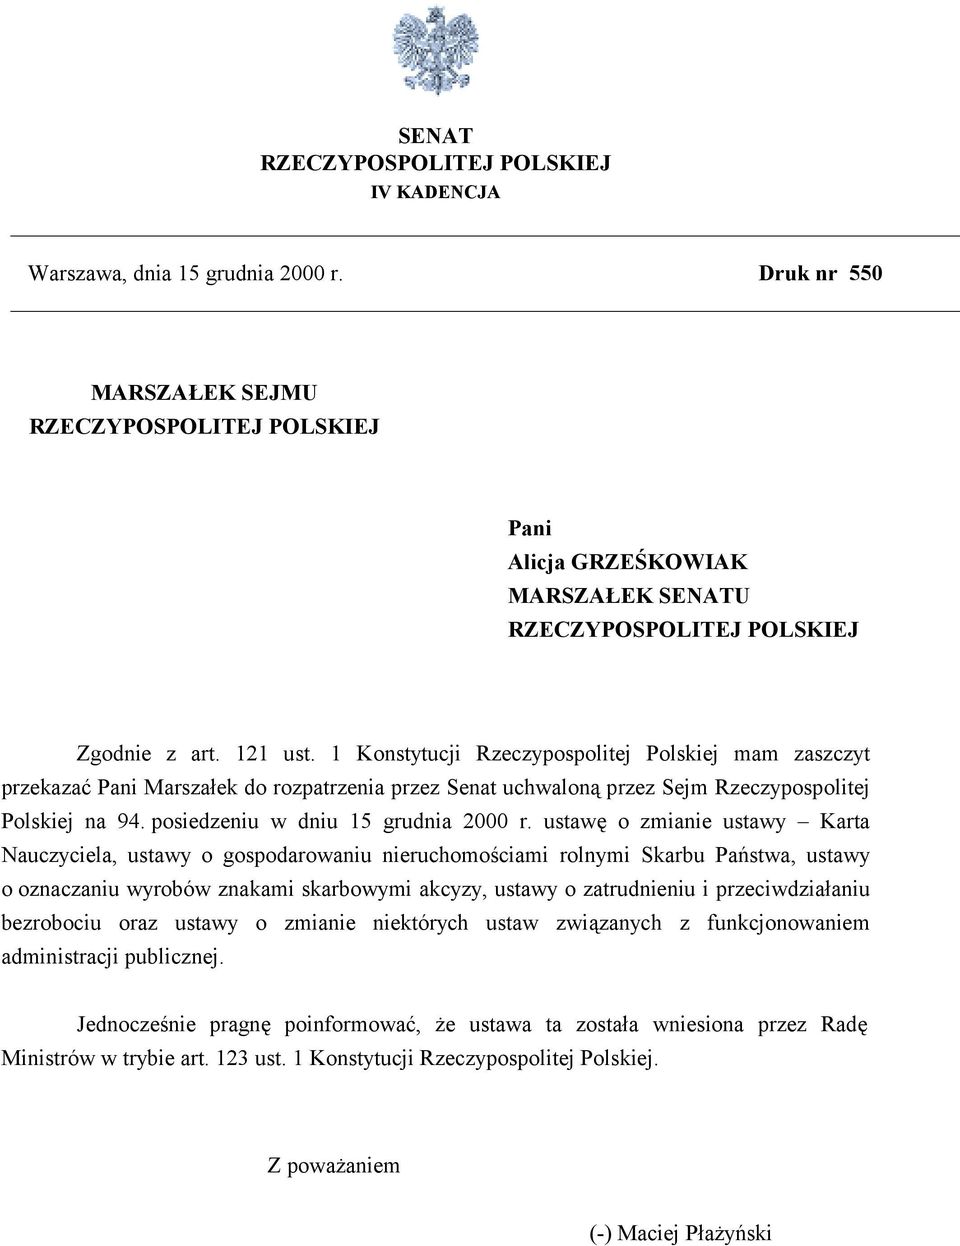 1 Konstytucji Rzeczypospolitej Polskiej mam zaszczyt przekazać Pani Marszałek do rozpatrzenia przez Senat uchwaloną przez Sejm Rzeczypospolitej Polskiej na 94. posiedzeniu w dniu 15 grudnia 2000 r.